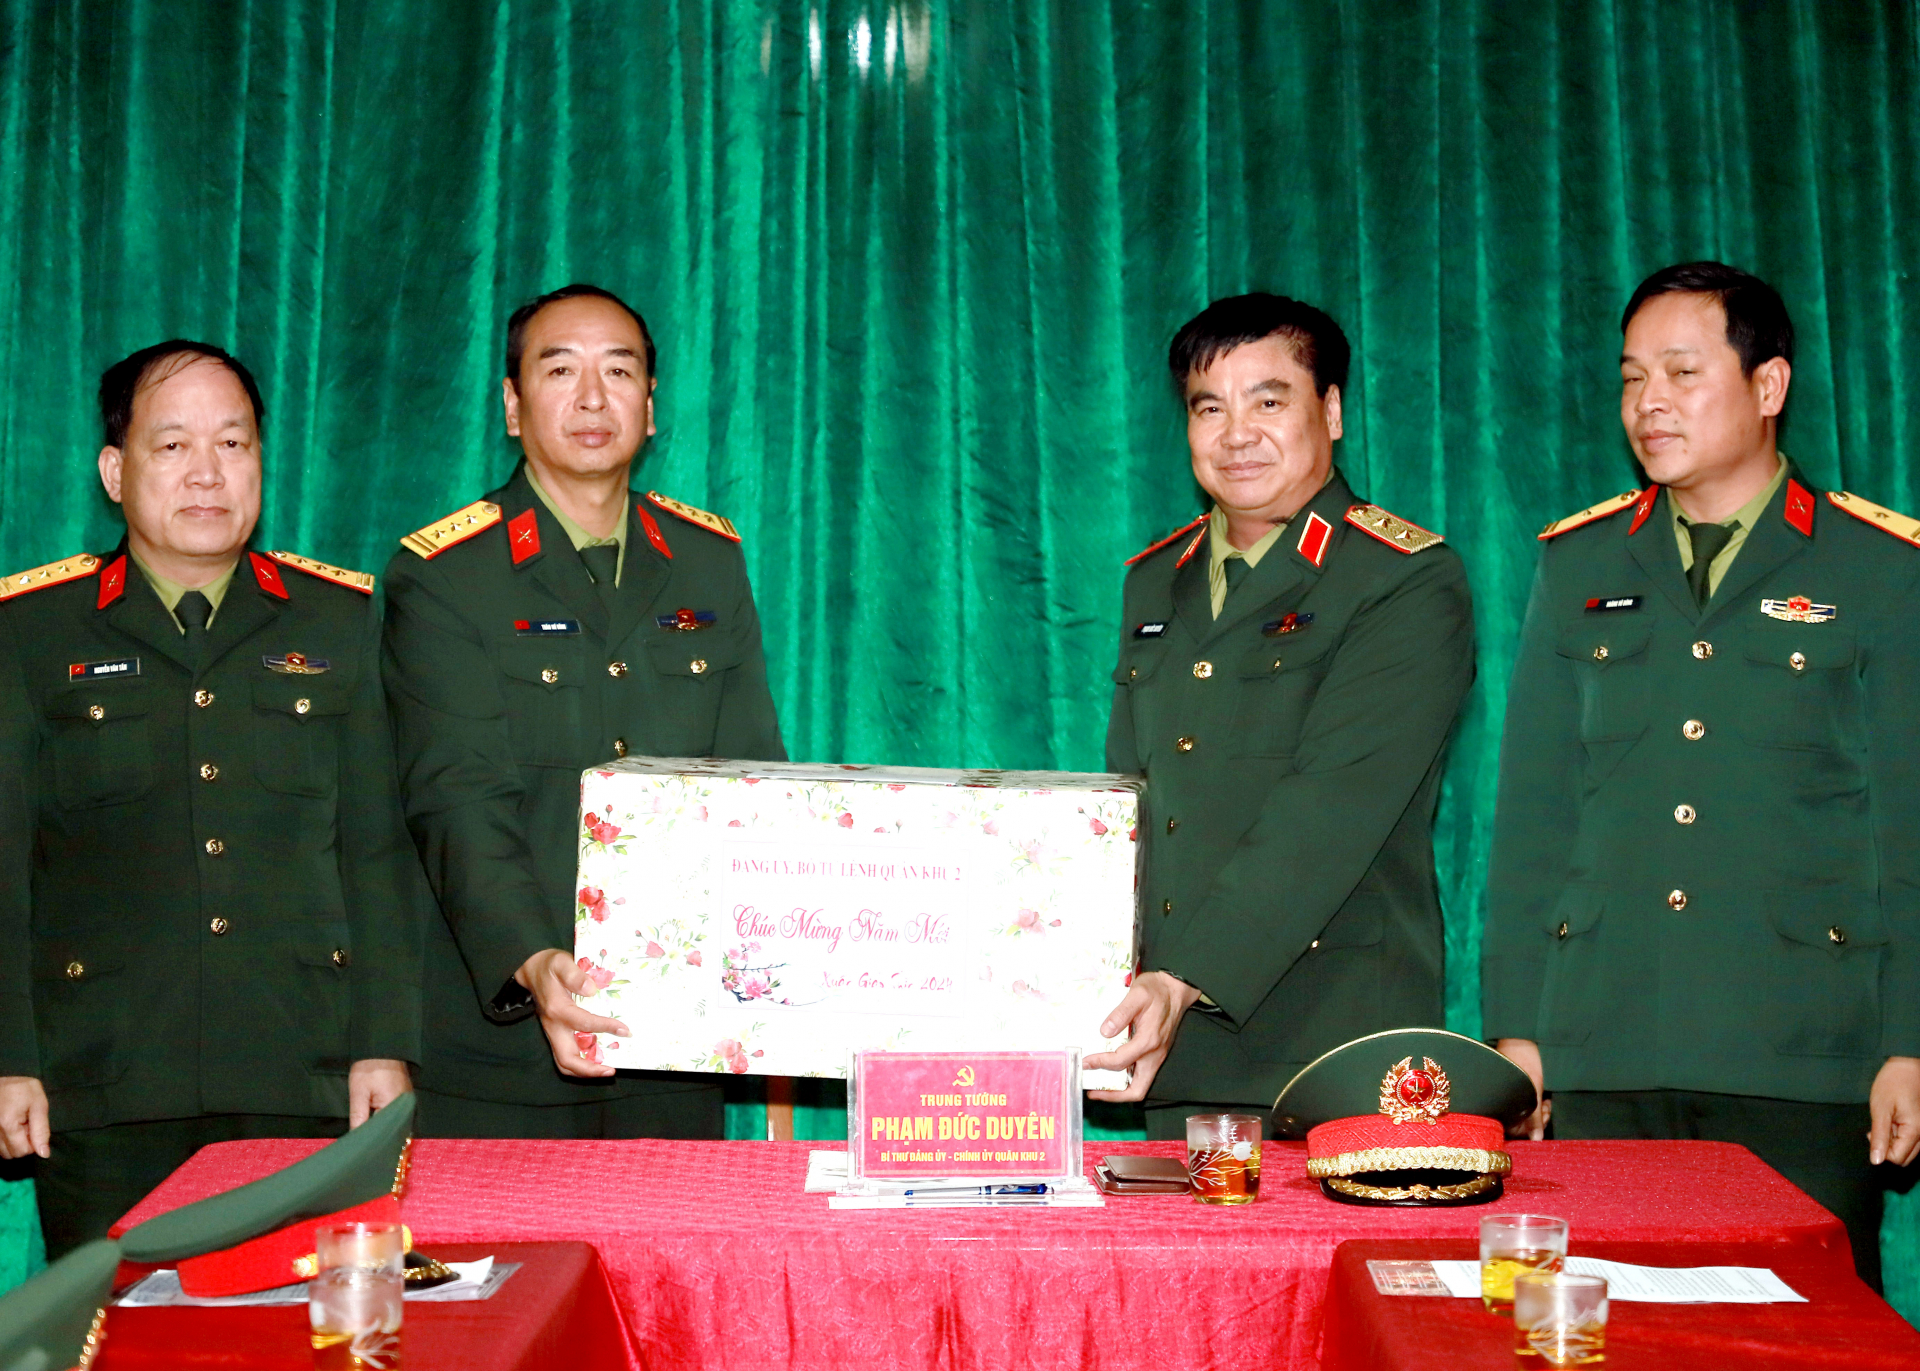 Trung tướng Phạm Đức Duyên tặng quà cán bộ, chiến sỹ Đội Tìm kiếm, quy tập hài cốt liệt sĩ (Bộ CHQS tỉnh).